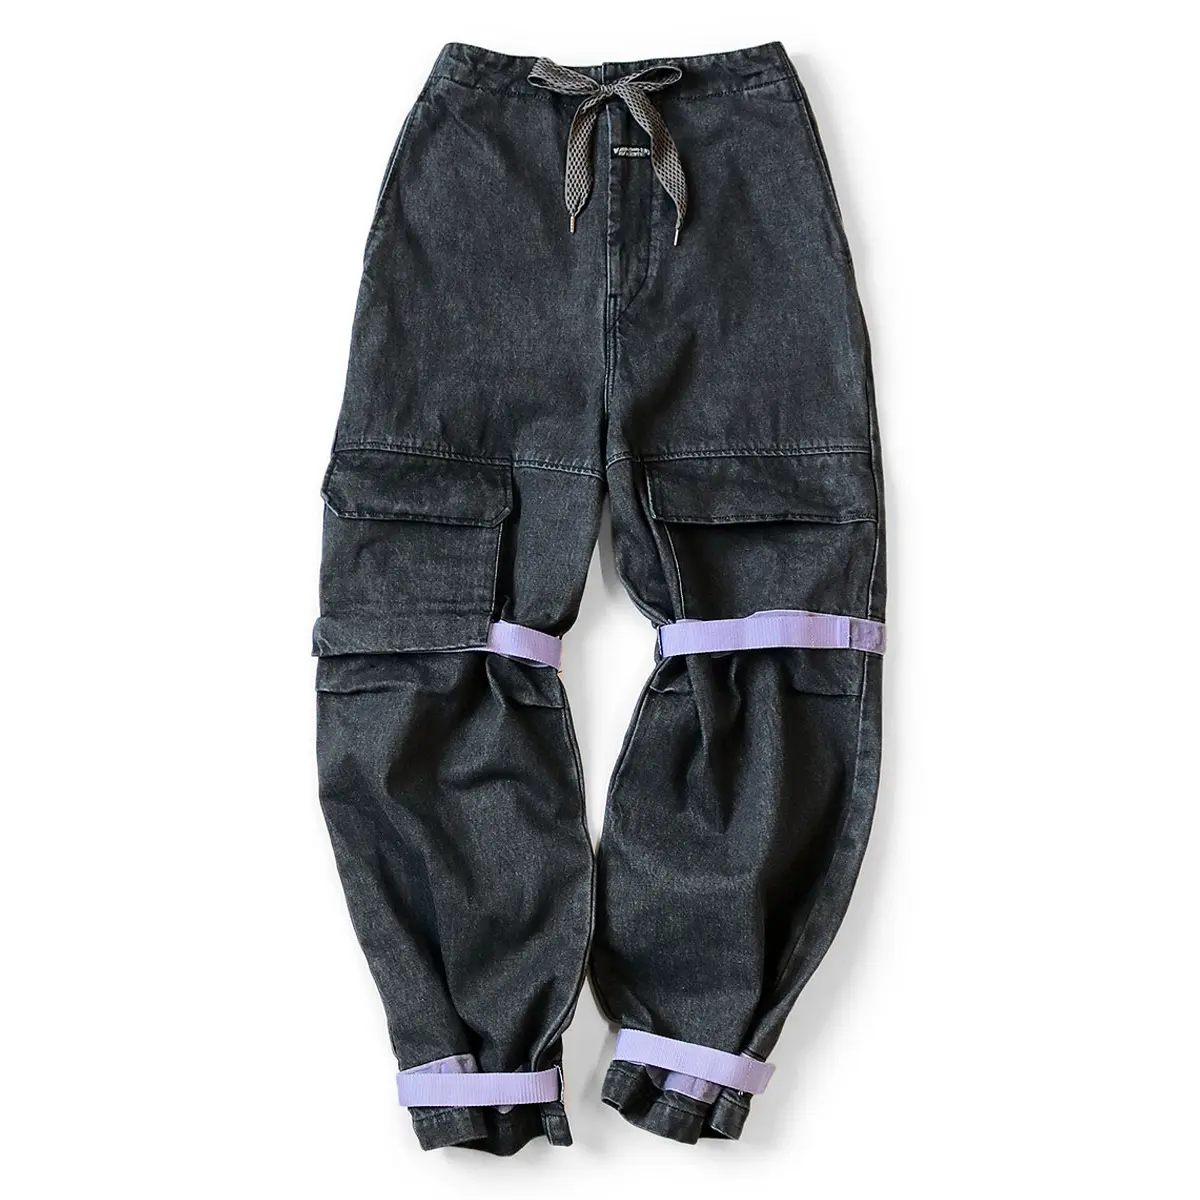 ZhuoYang Kleidung Herren gotische Hosen atmungsaktiv nachhaltig hochwertiges Baumwollmaterial gotisch lila Marke Jeans Hosen